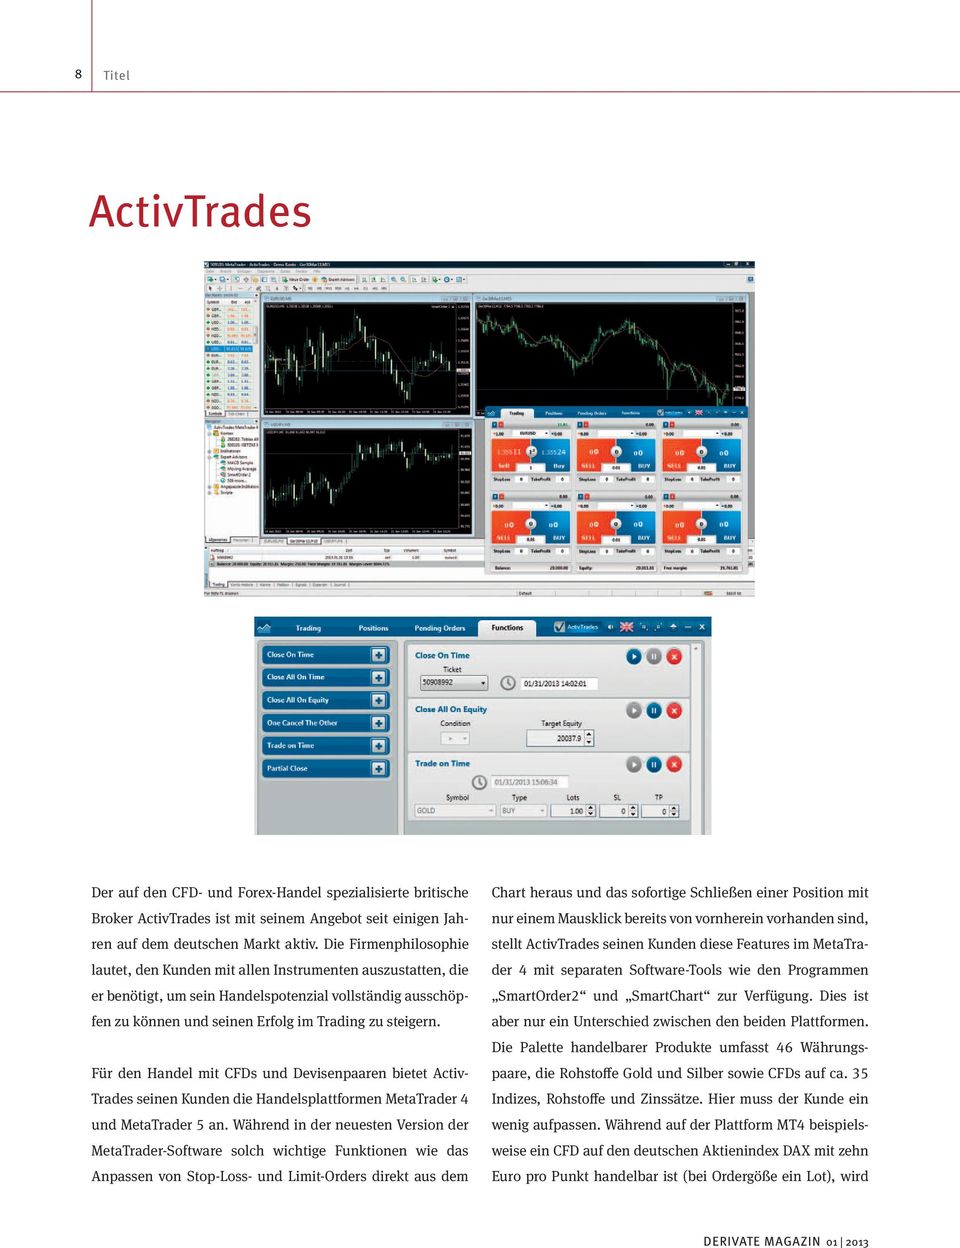 Für den Handel mit CFDs und Devisenpaaren bietet Activ Trades seinen Kunden die Handelsplattformen MetaTrader 4 und MetaTrader 5 an.